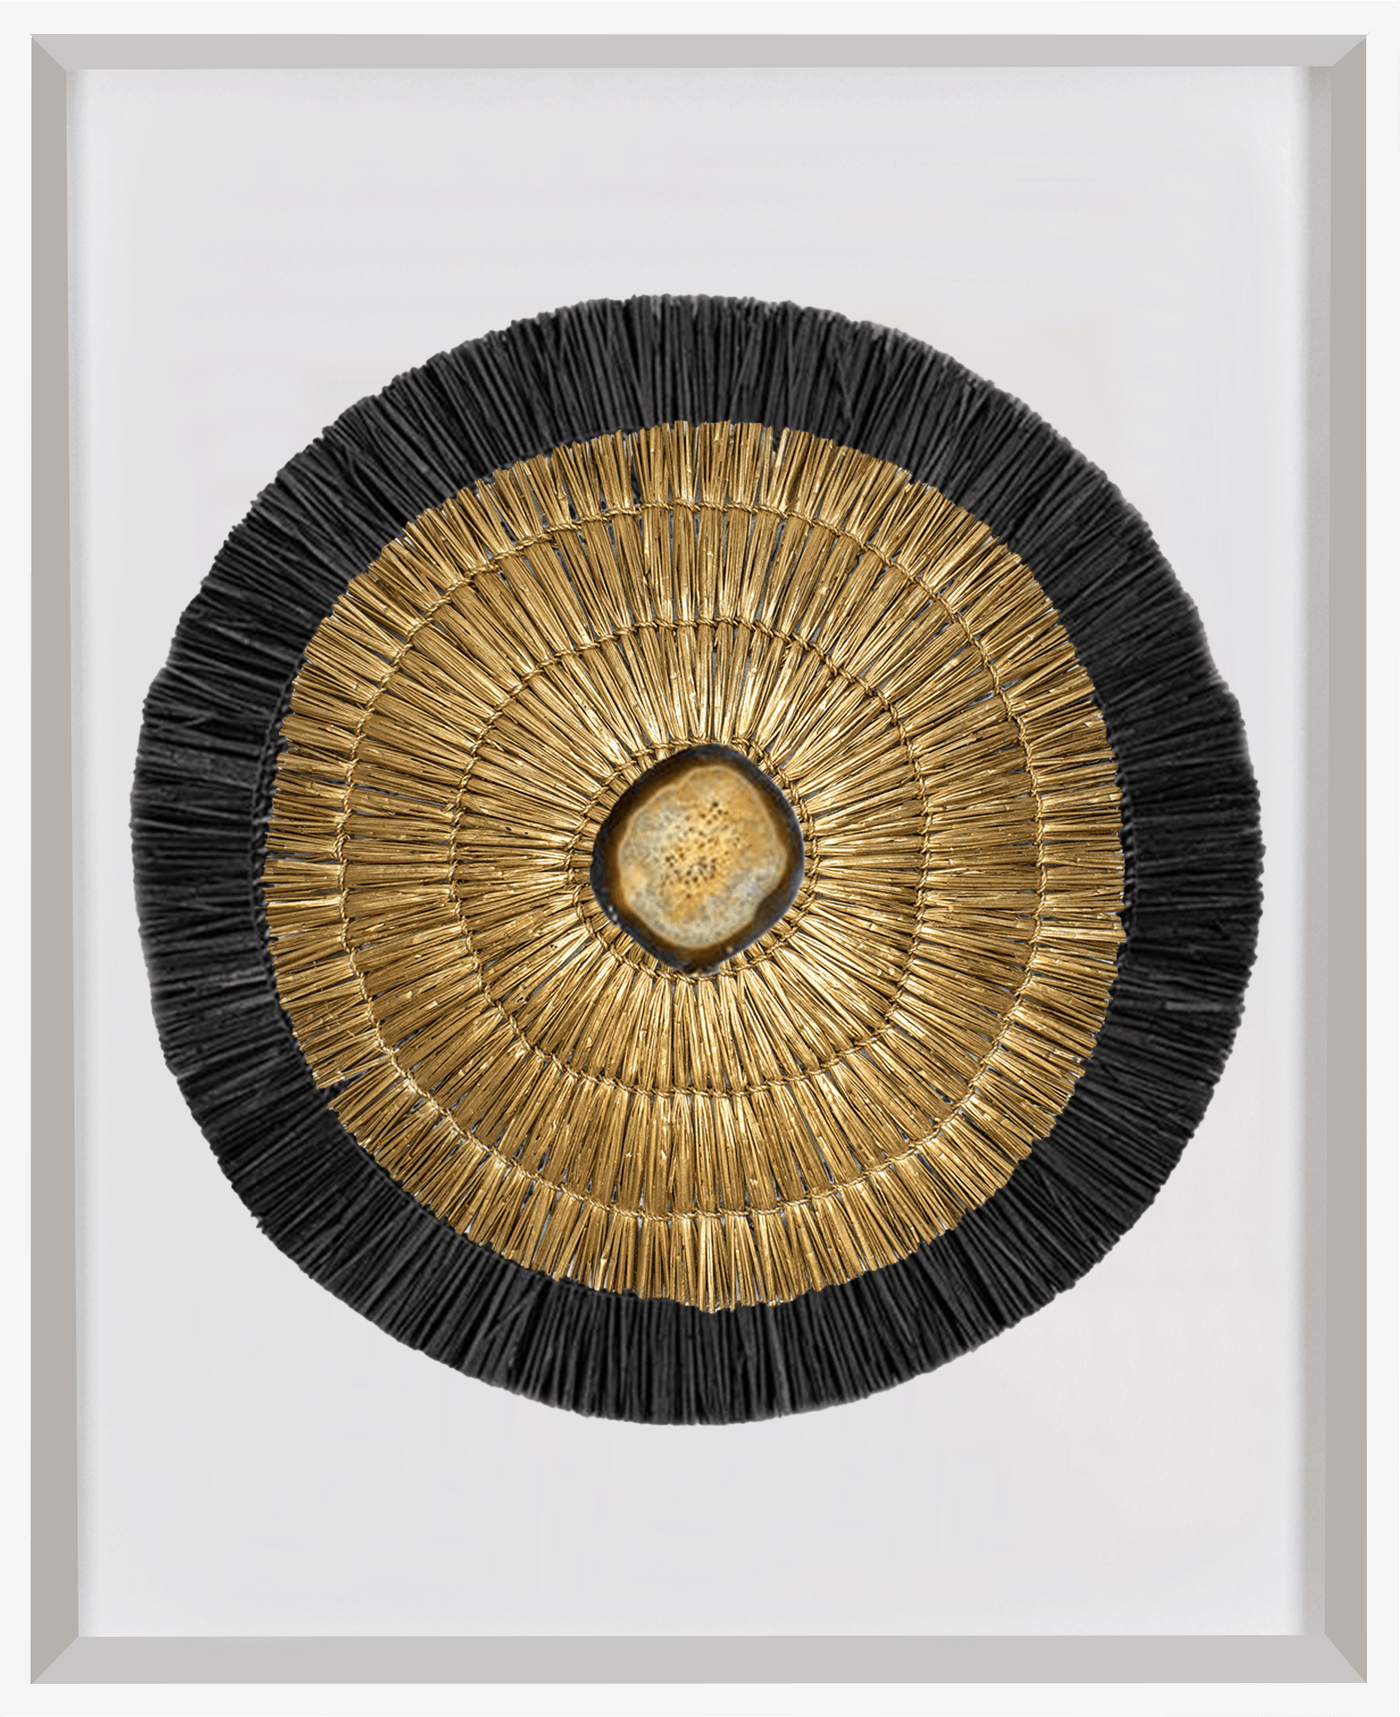 Agate Grass Mat Gold & Black on White Artwork 67 x 85 cm